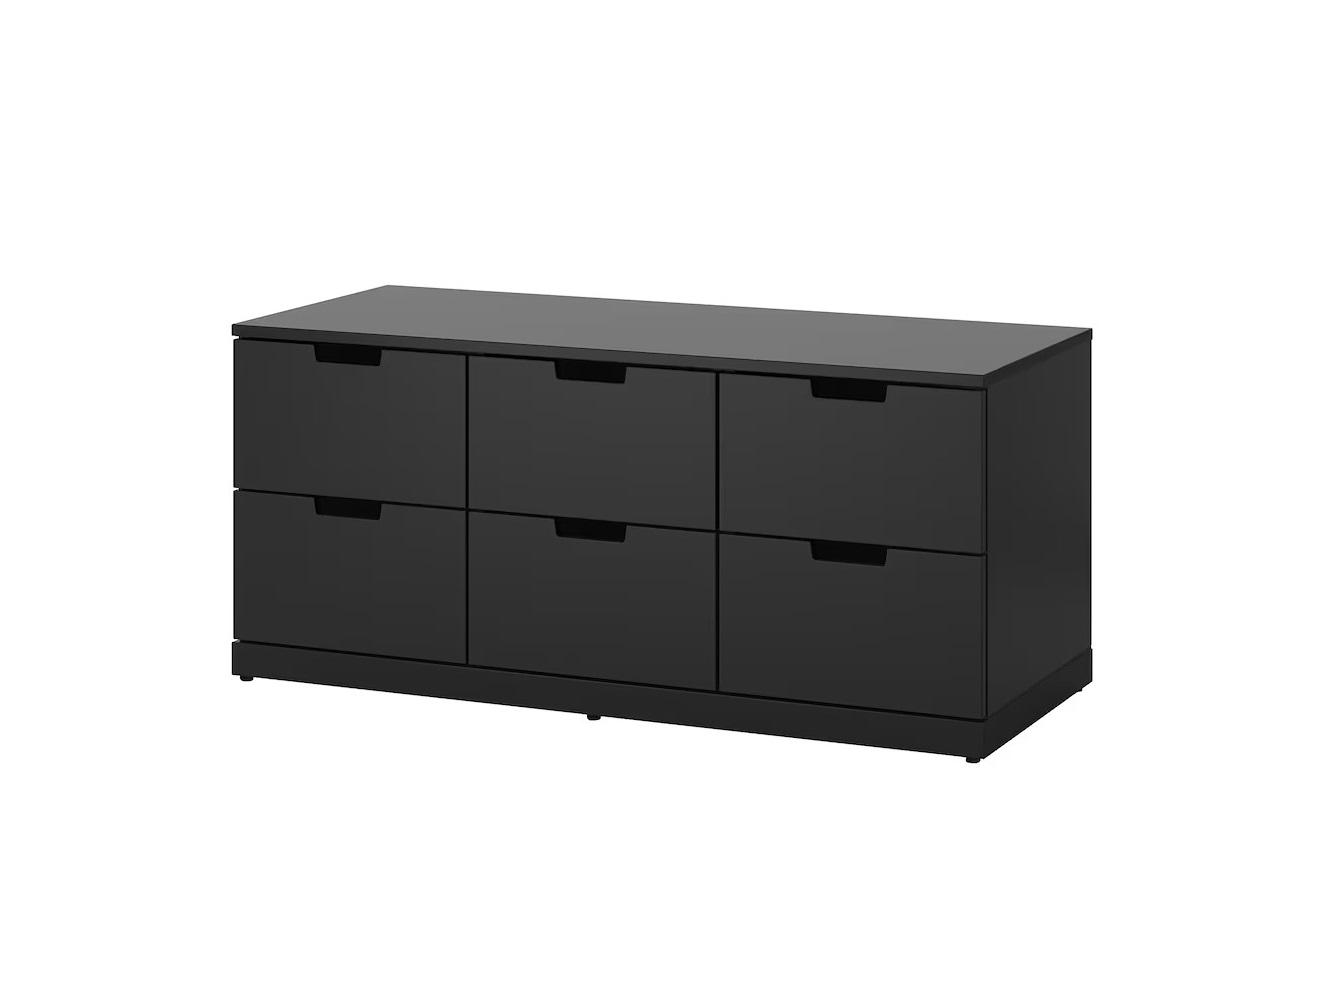 Комод Нордли 23 black ИКЕА (IKEA) изображение товара